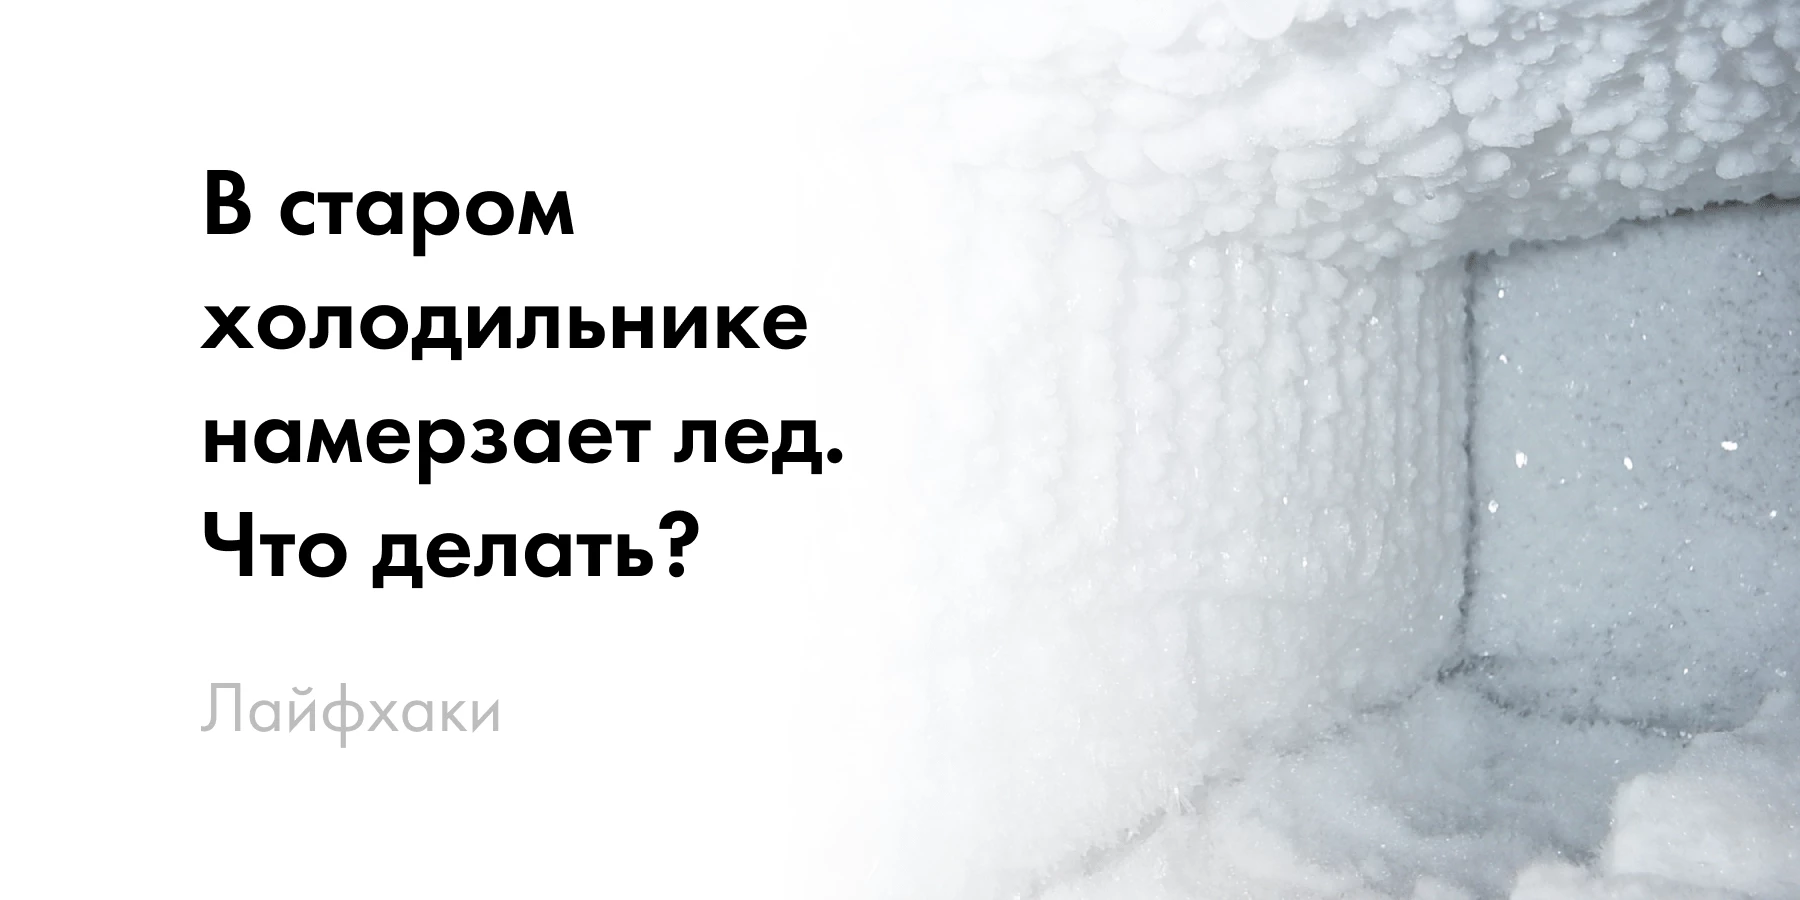 Чем обогреть дом или квартиру без центрального отопления? – Официальный блог centerforstrategy.ru